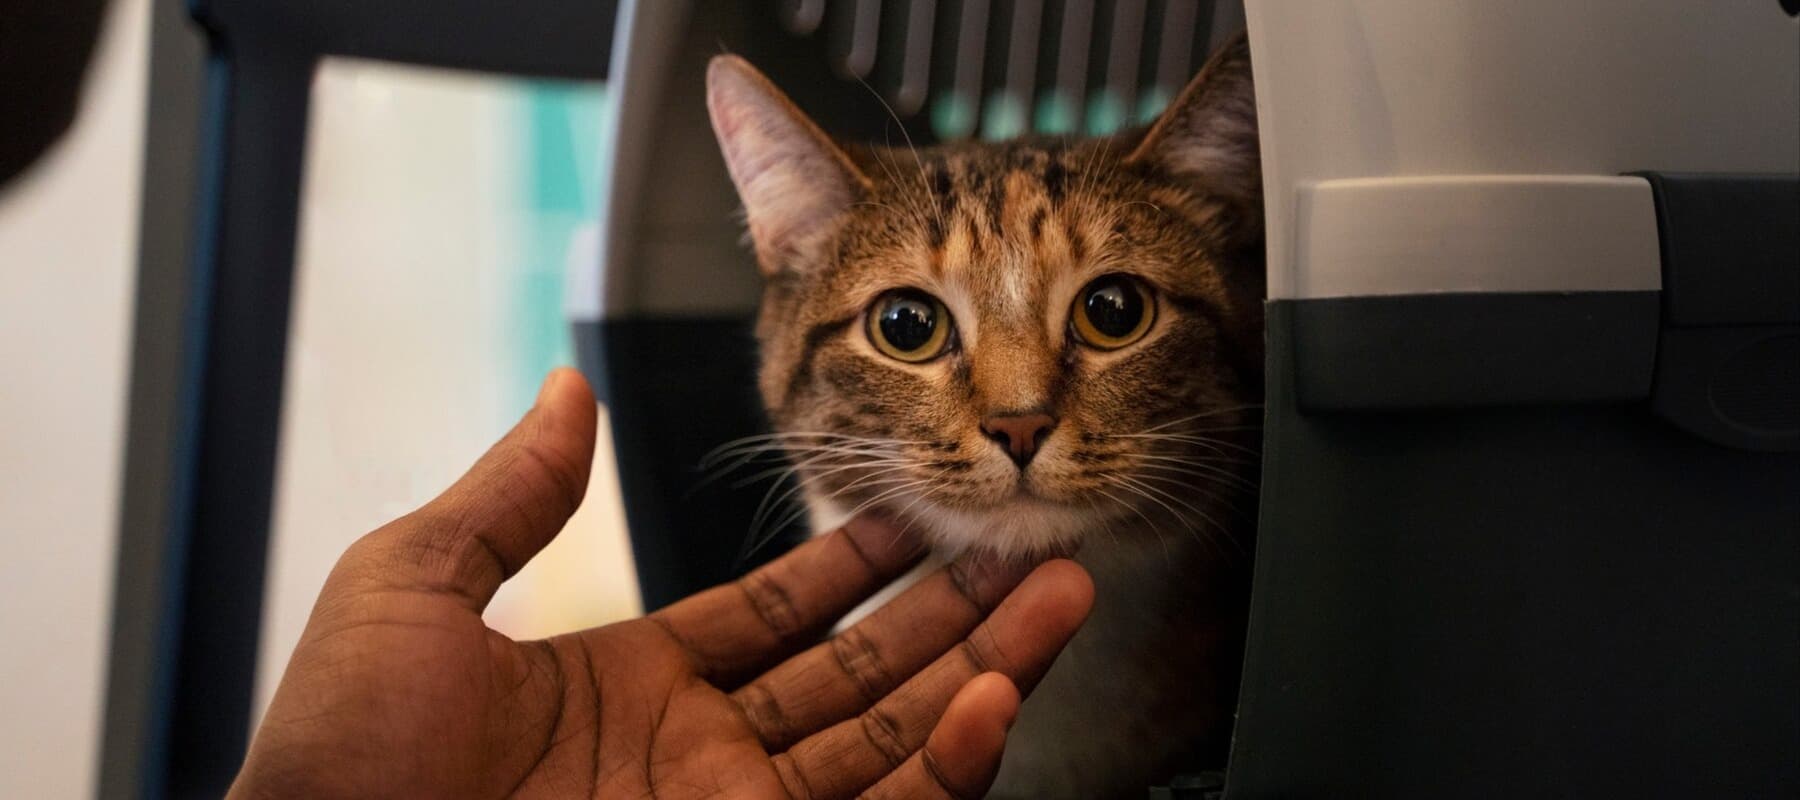 Фото новости: "Мы везем с собой кота: в России растет число поездок с домашними животными"